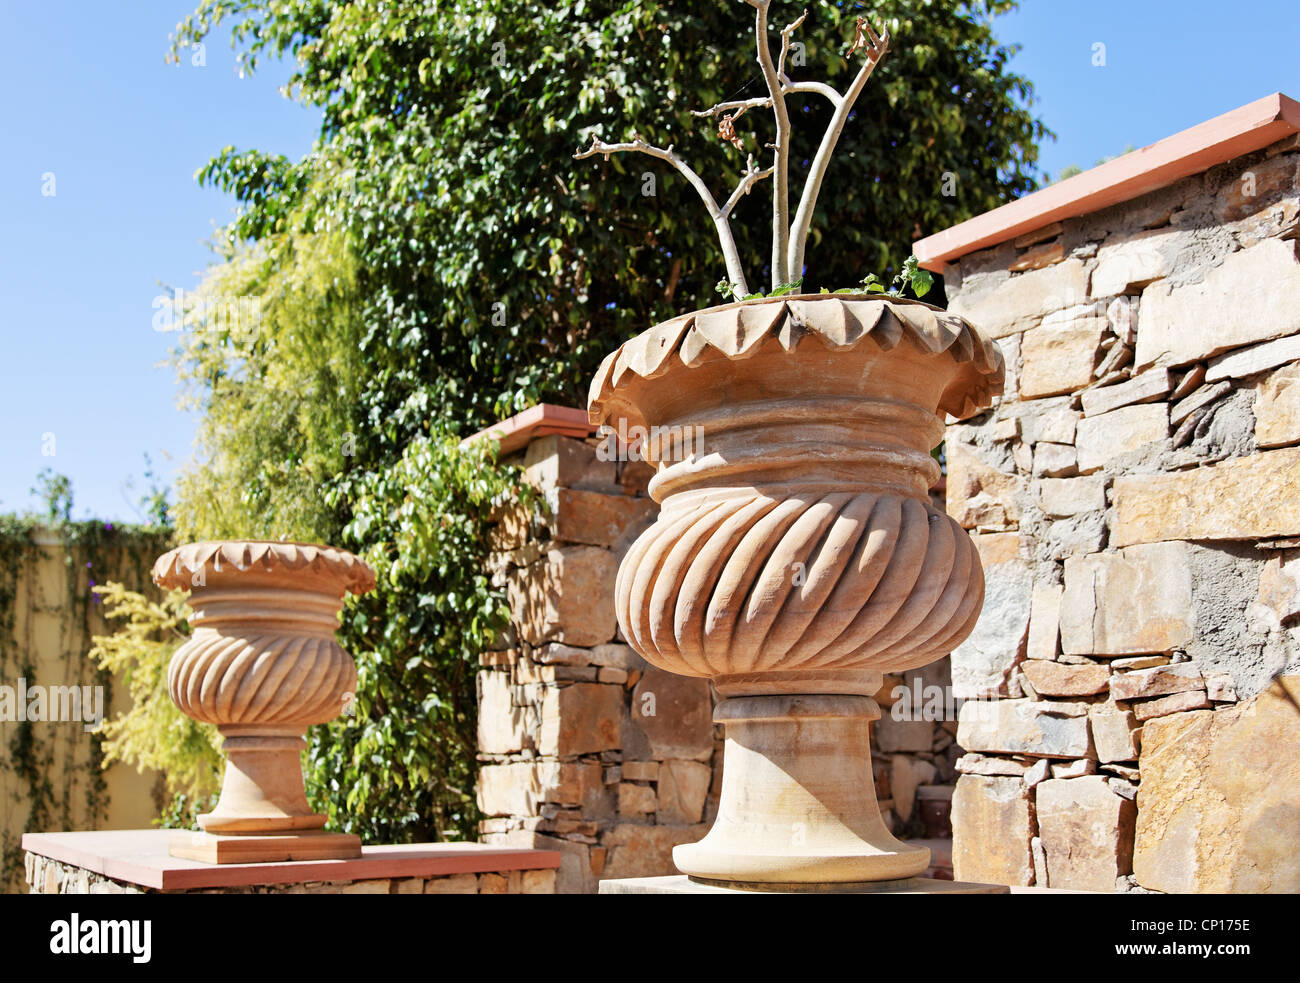 Generico con giardino di pietra scolpita vasi per piante amd randon pietra locale parete masoned Foto Stock